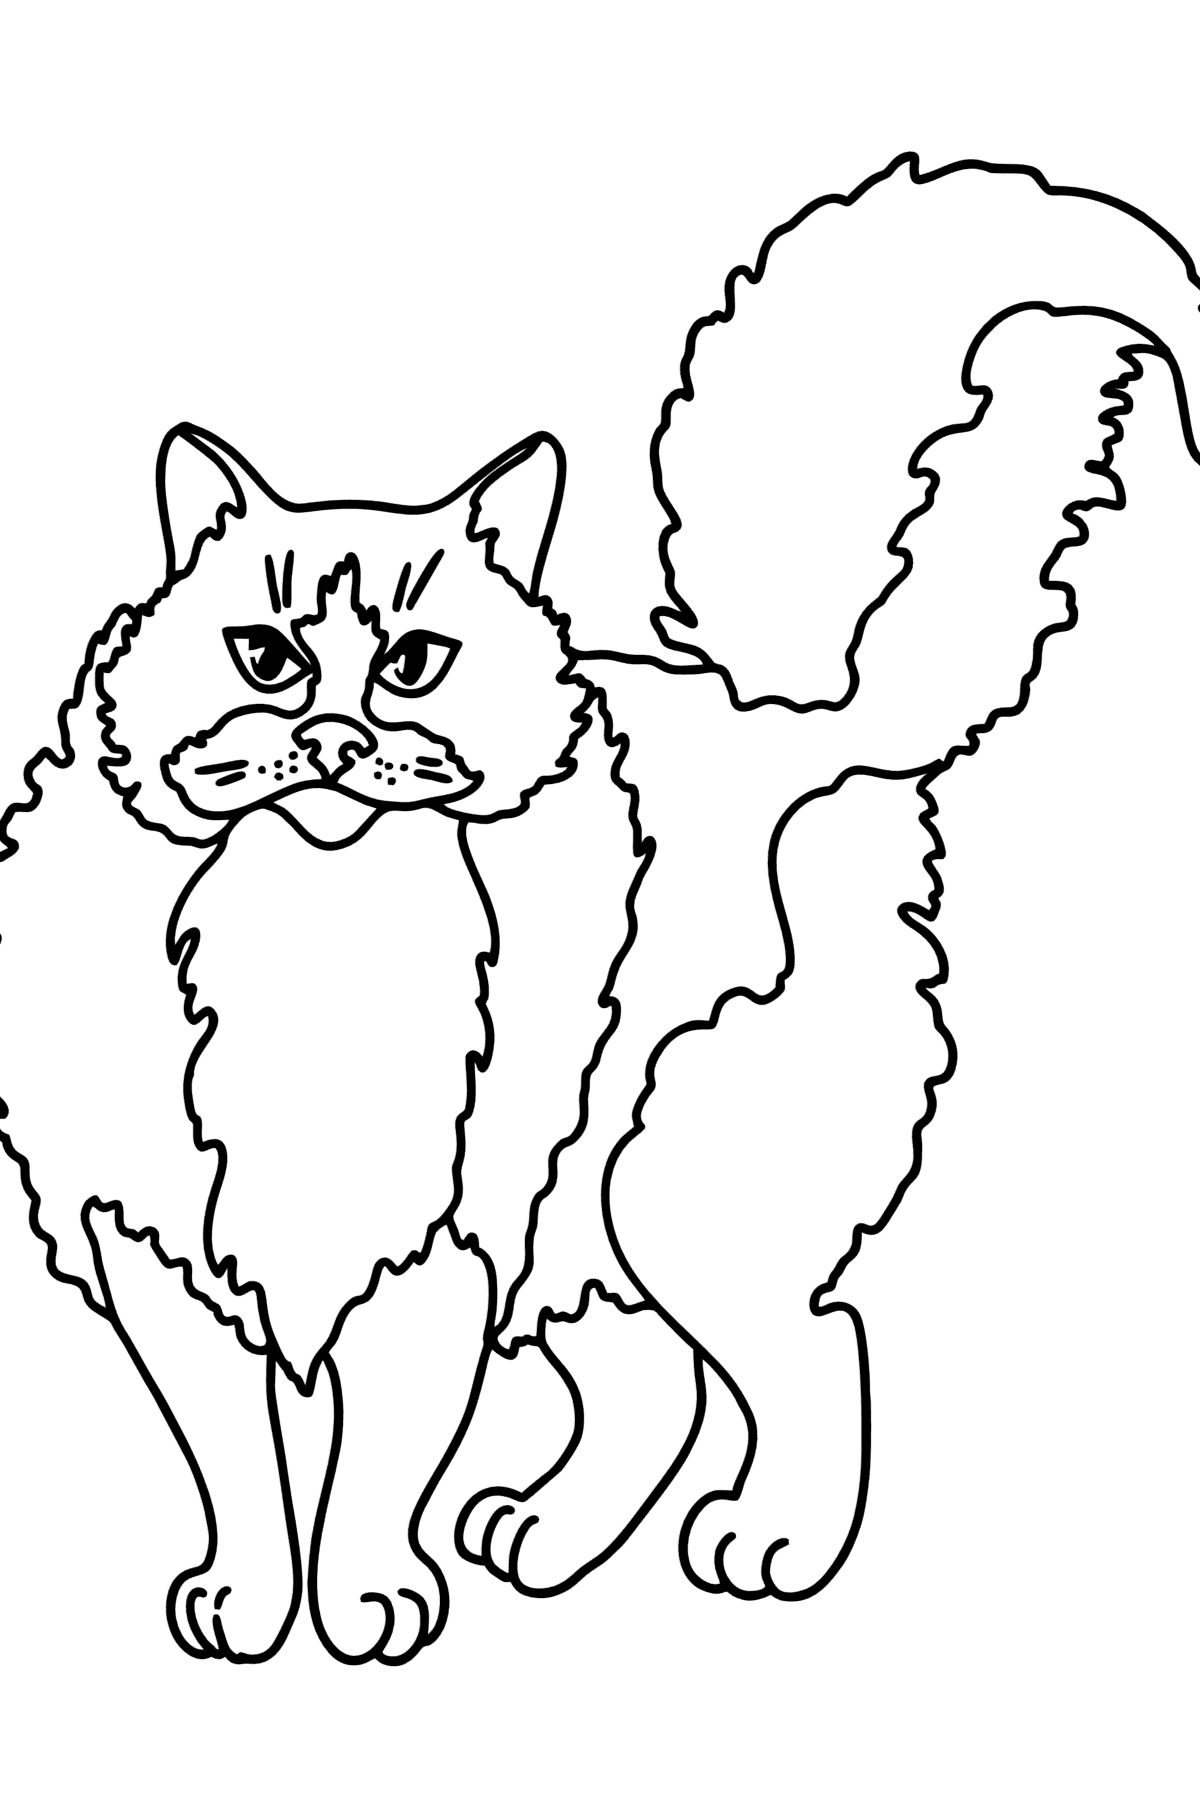 Boyama sayfası ragdoll kedi - Boyamalar çocuklar için